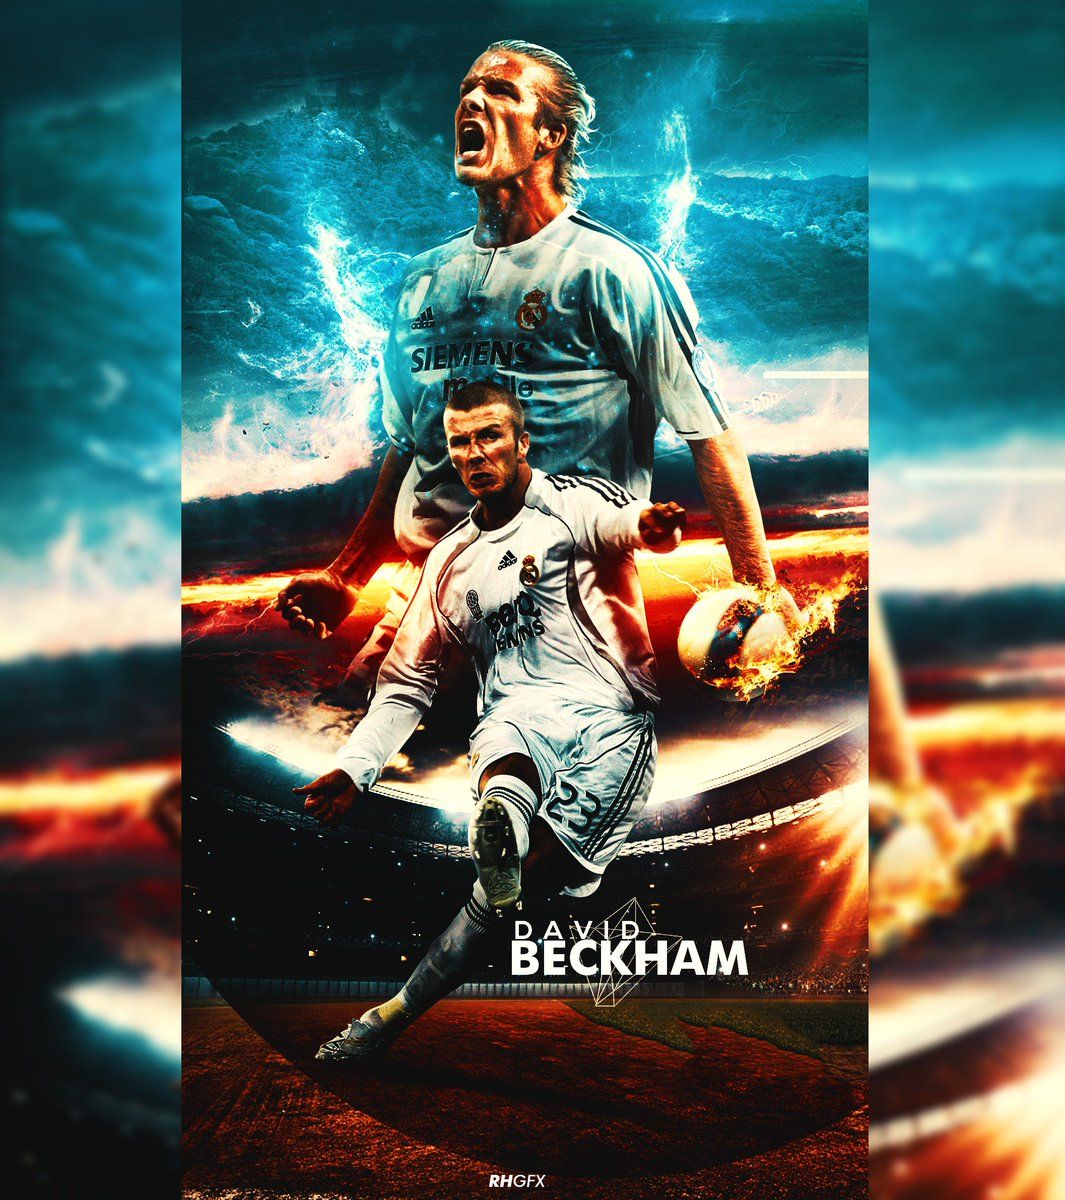 RHGFX Beckham. Wallpaper #beckham #legend